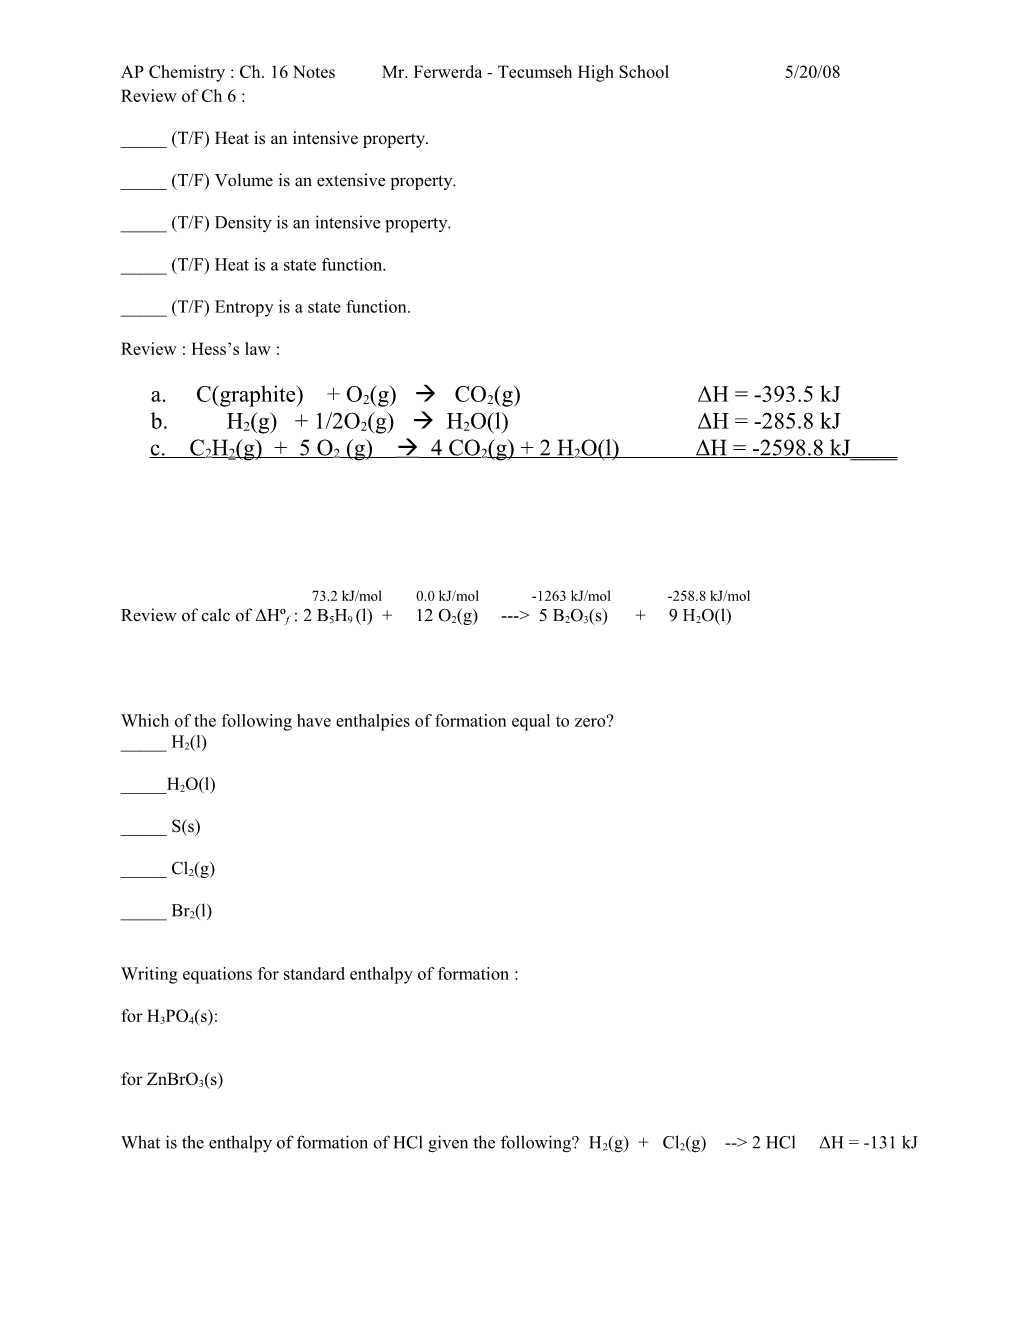 AP Chemistry : Ch. 16 Notesmr. Ferwerda - Tecumsehhigh School5/20/08